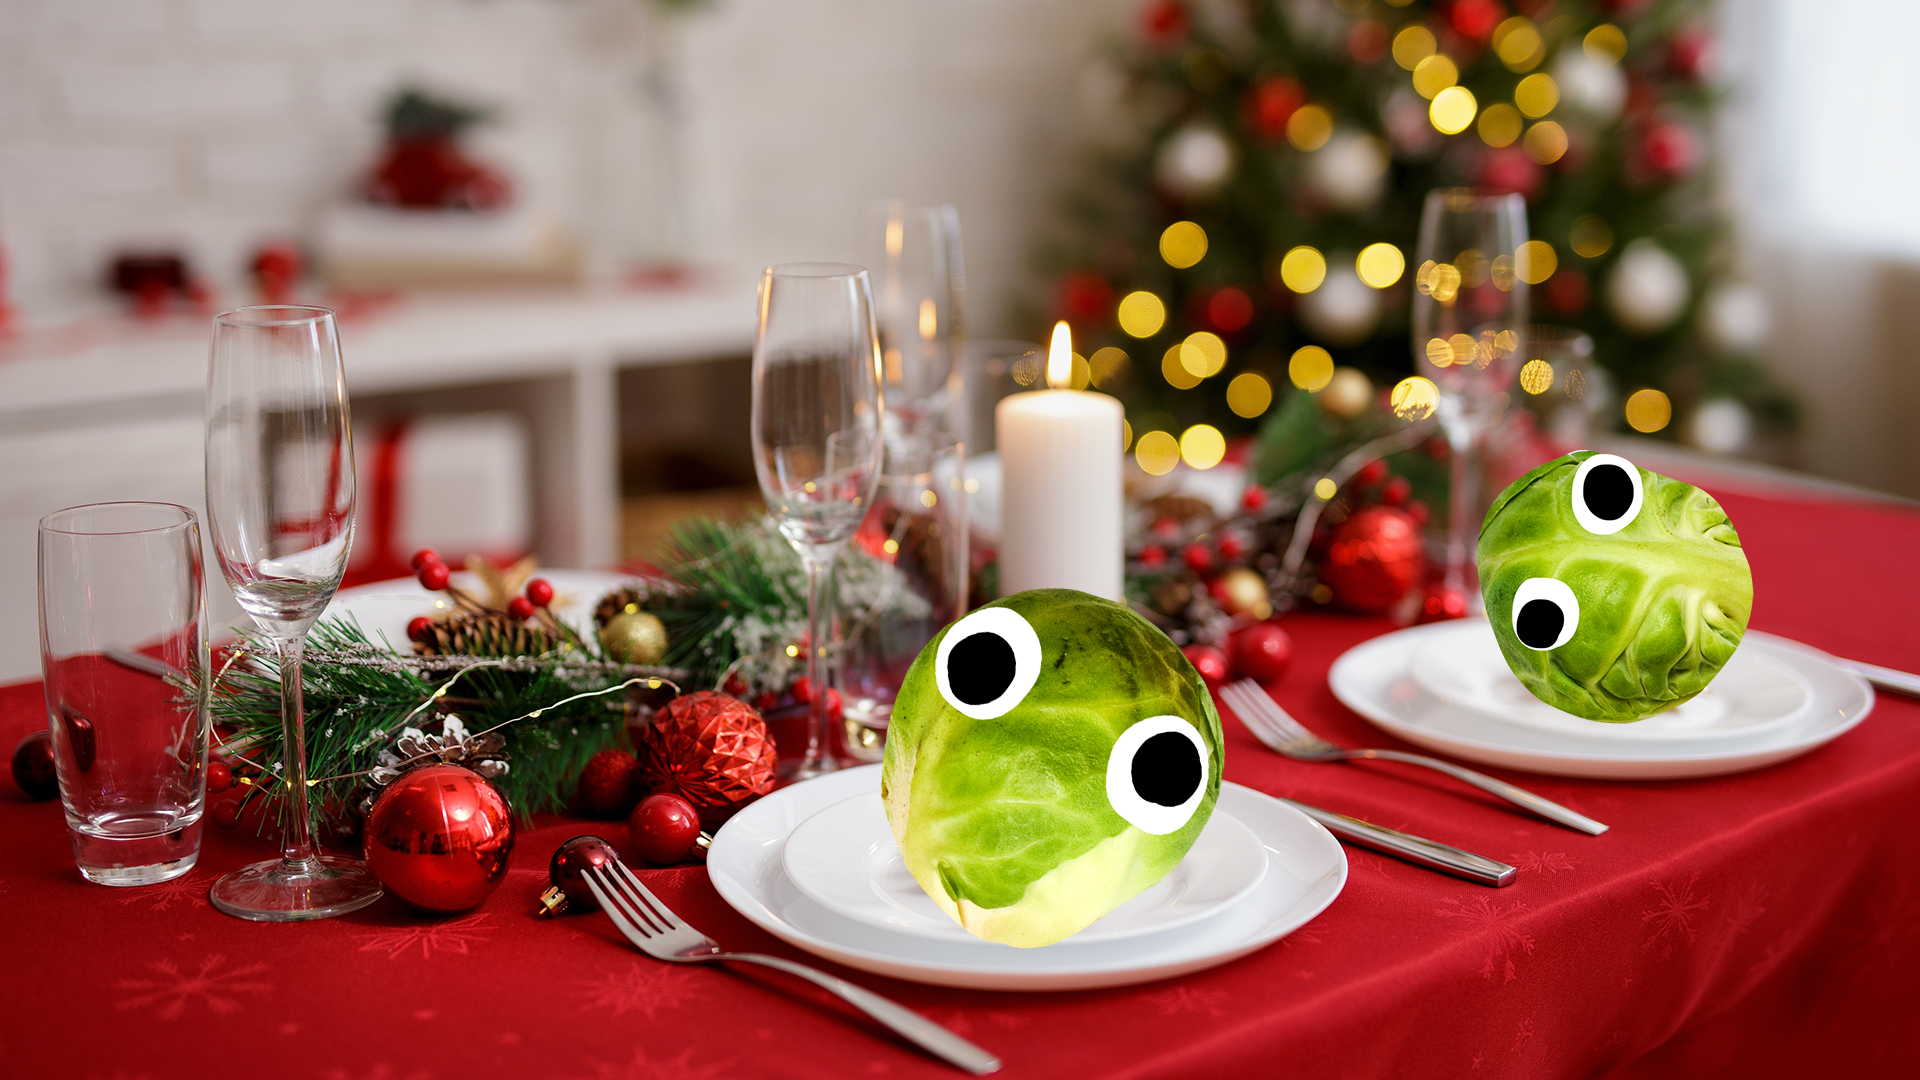 A festive dinner table